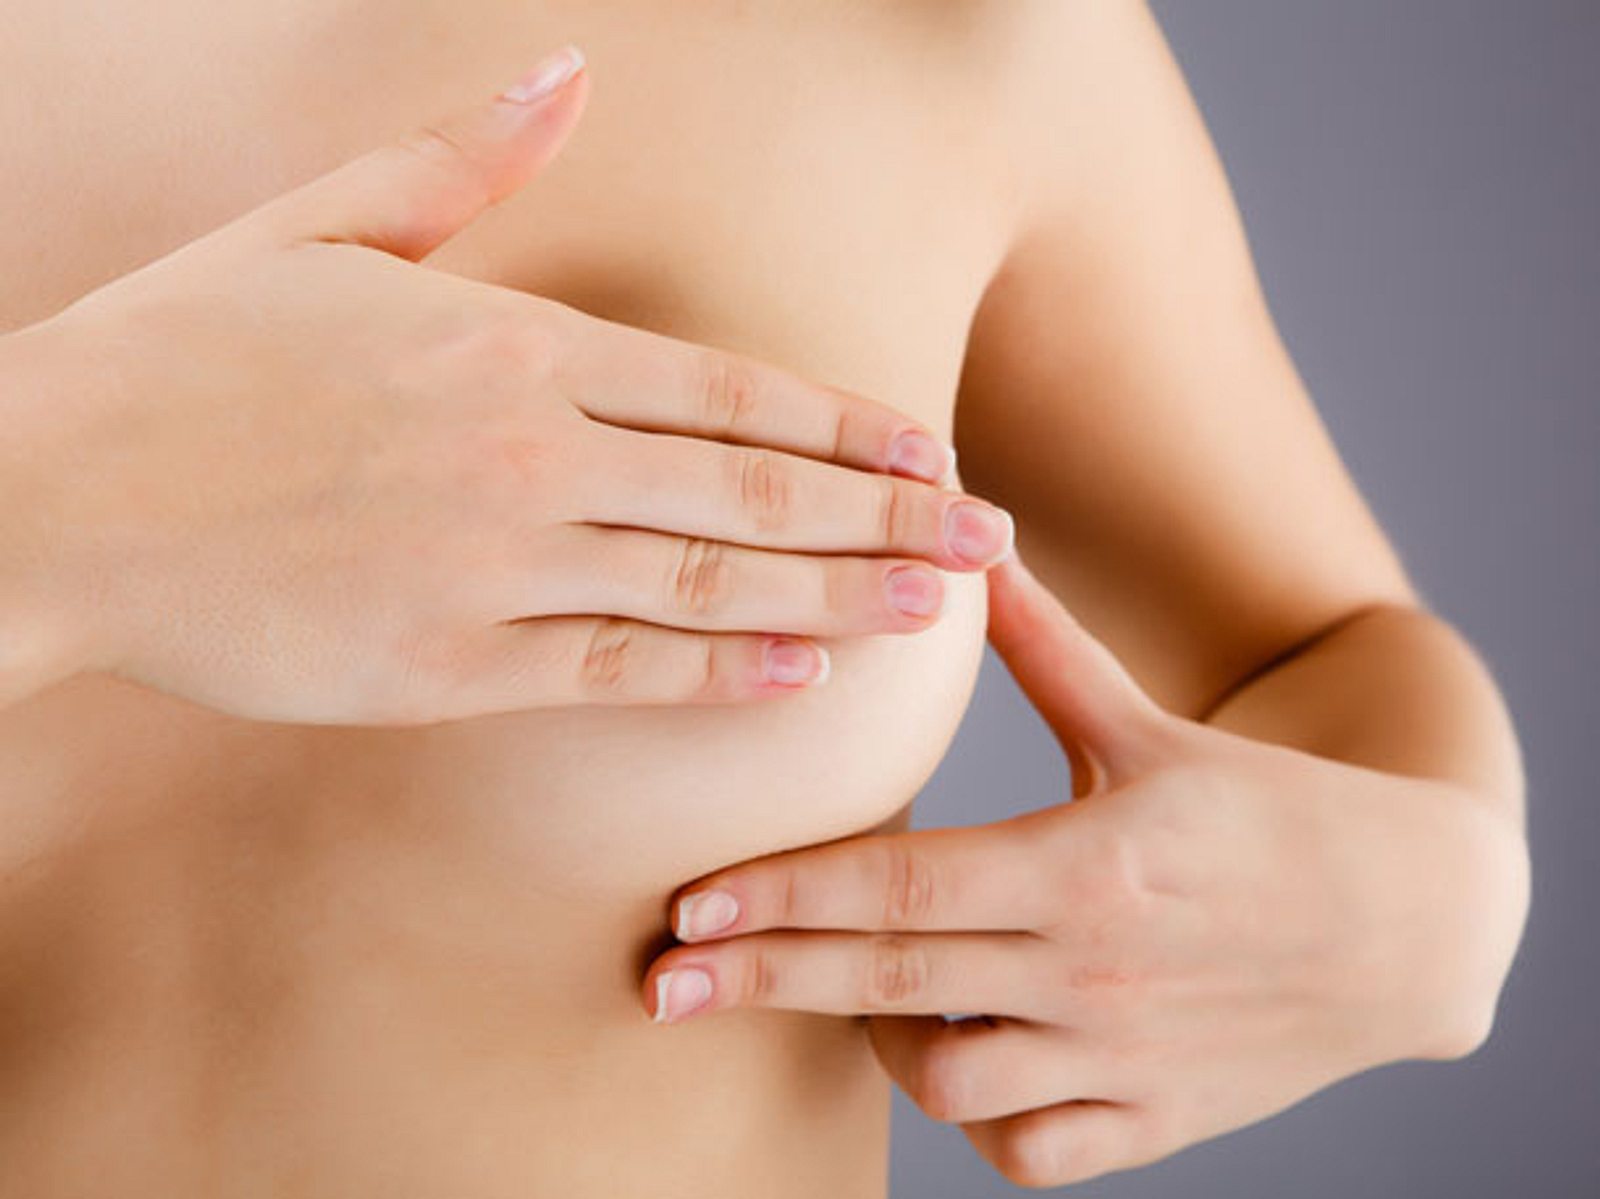 Brust brustkrebs sehr kleine Mammographie: Ab